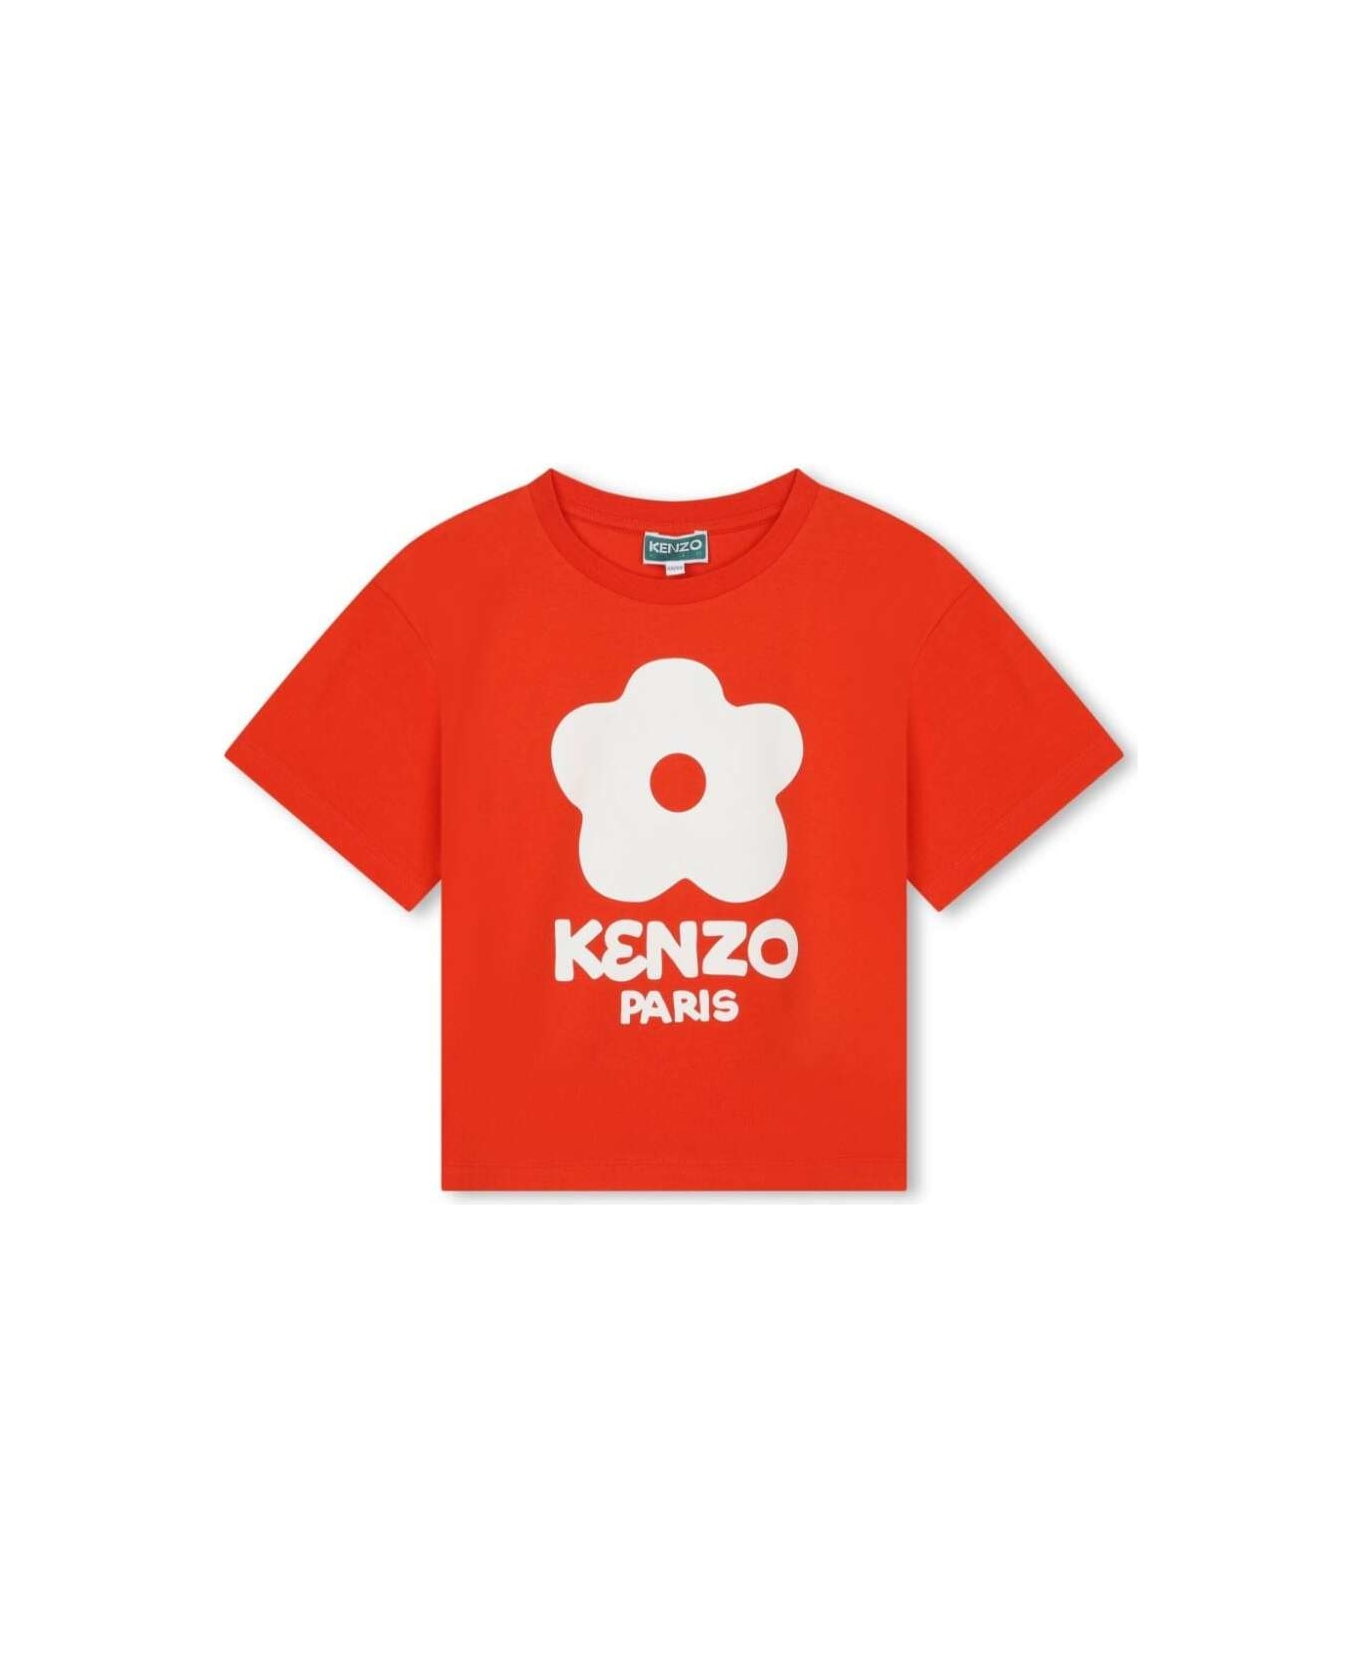 Kenzo K6025499a - Rosso